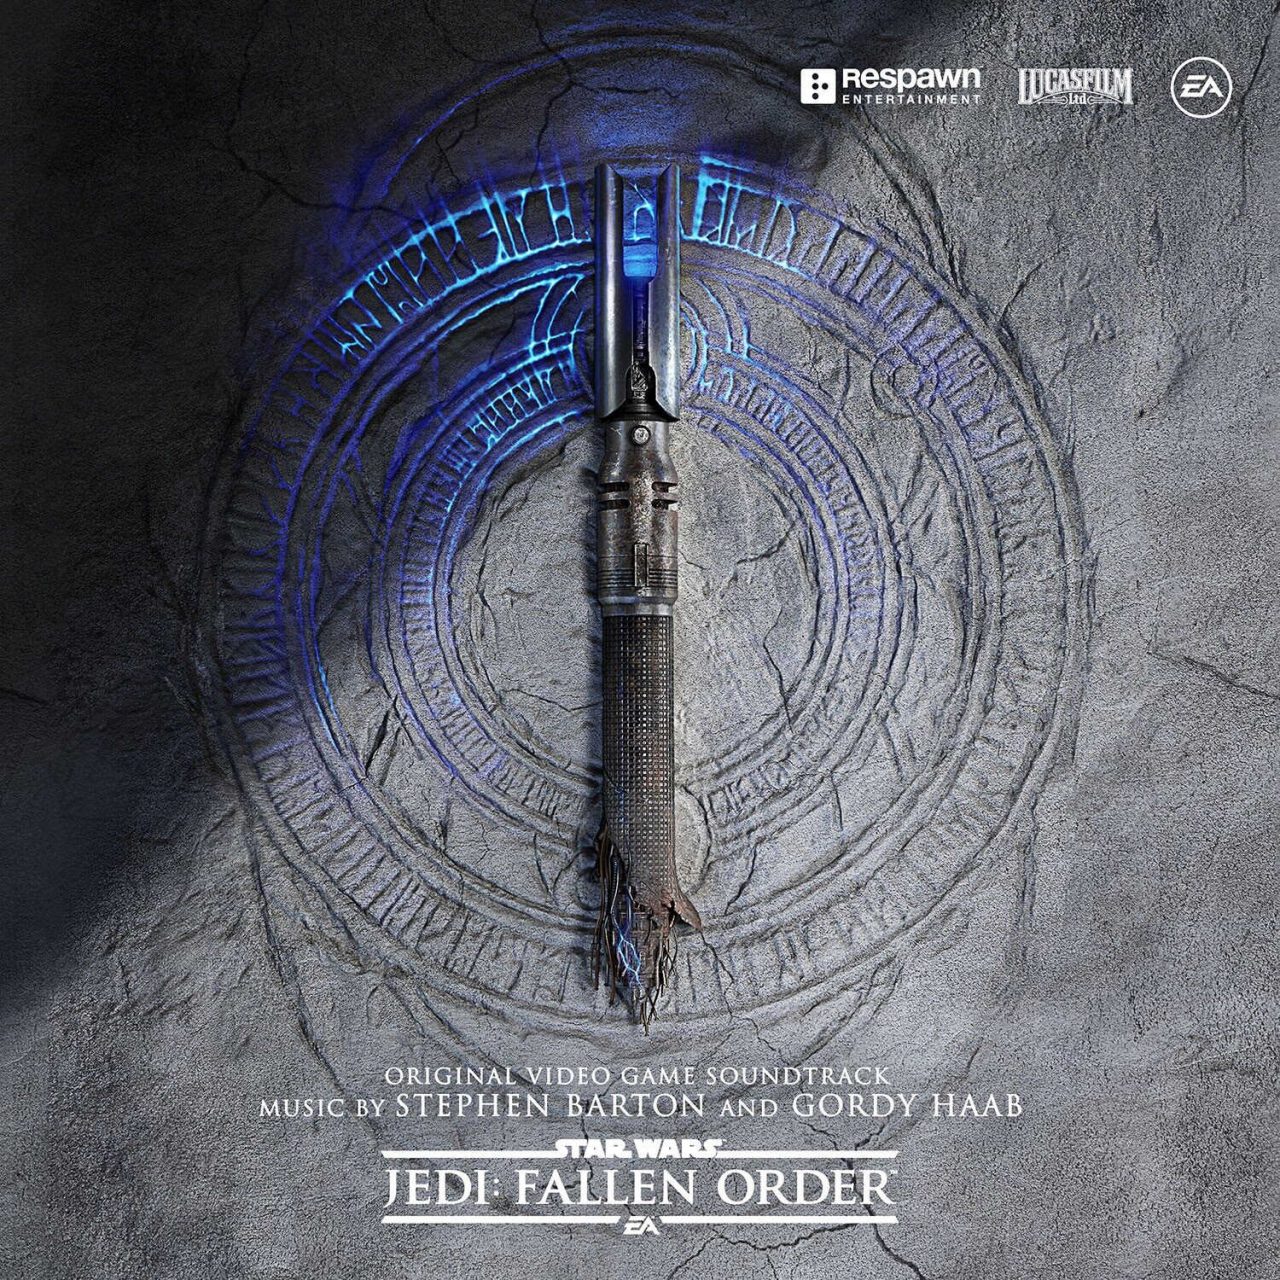 Se lanza el soundtrack de Star Wars Jedi: Fallen Order